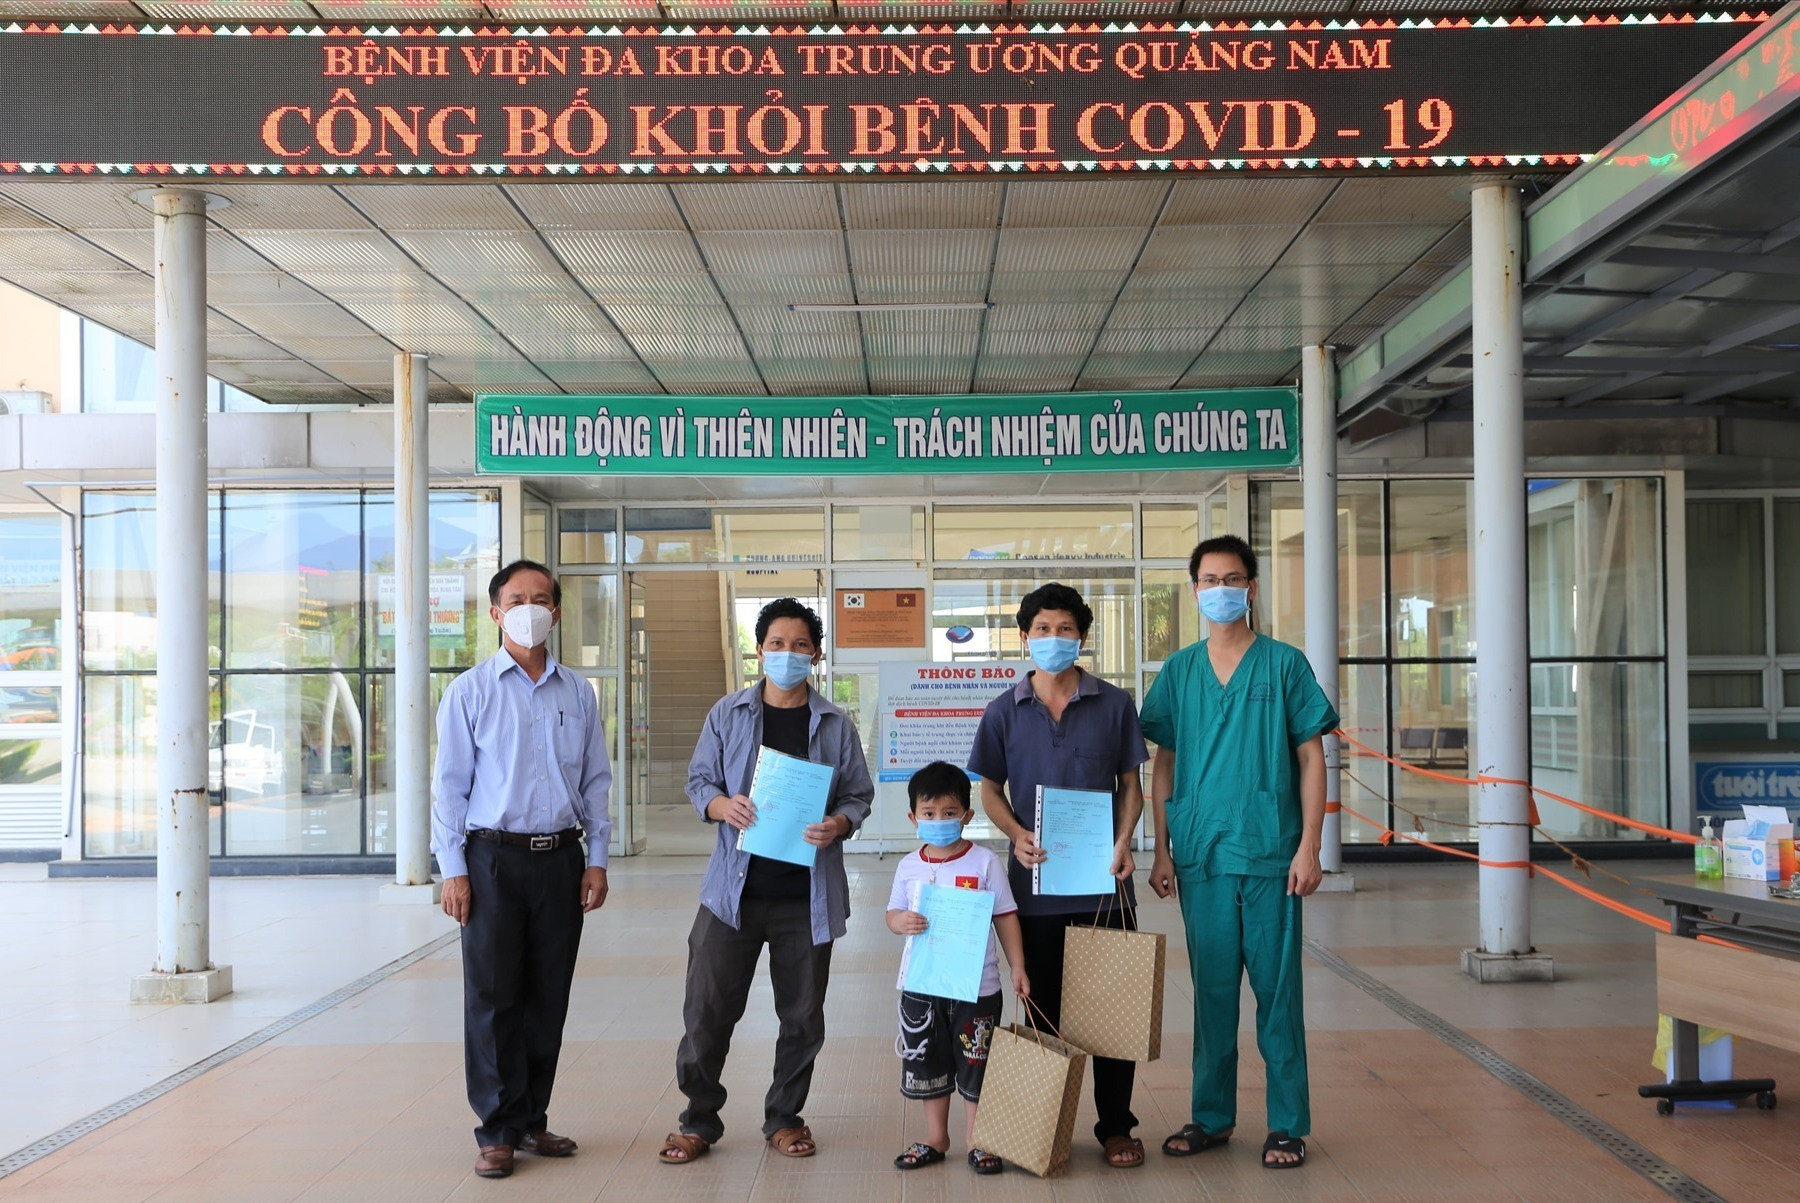 Bệnh viện Đa khoa Trung ương Quảng Nam cho xuất viện 3 bệnh nhân mắc Covid-19 đã chữa khỏi bệnh. Ảnh: H.A